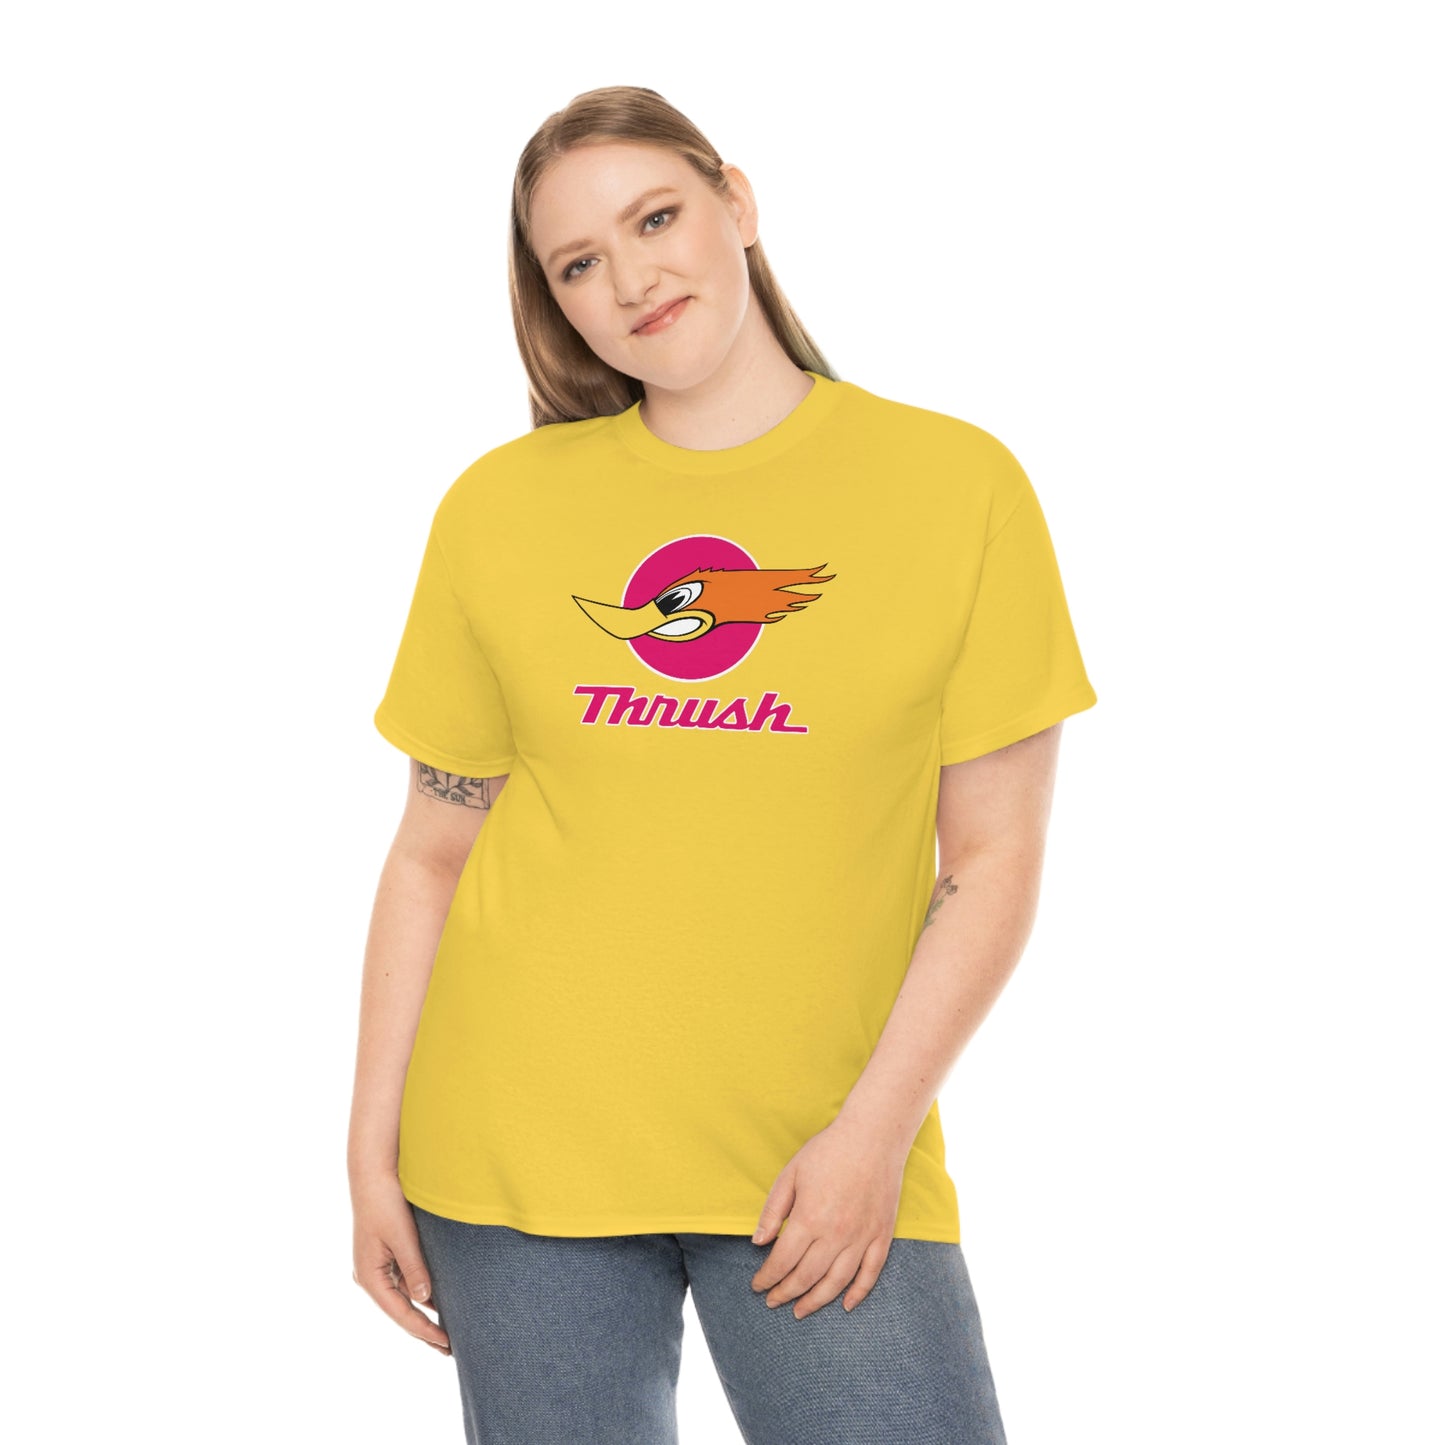 Thrush T-Shirt